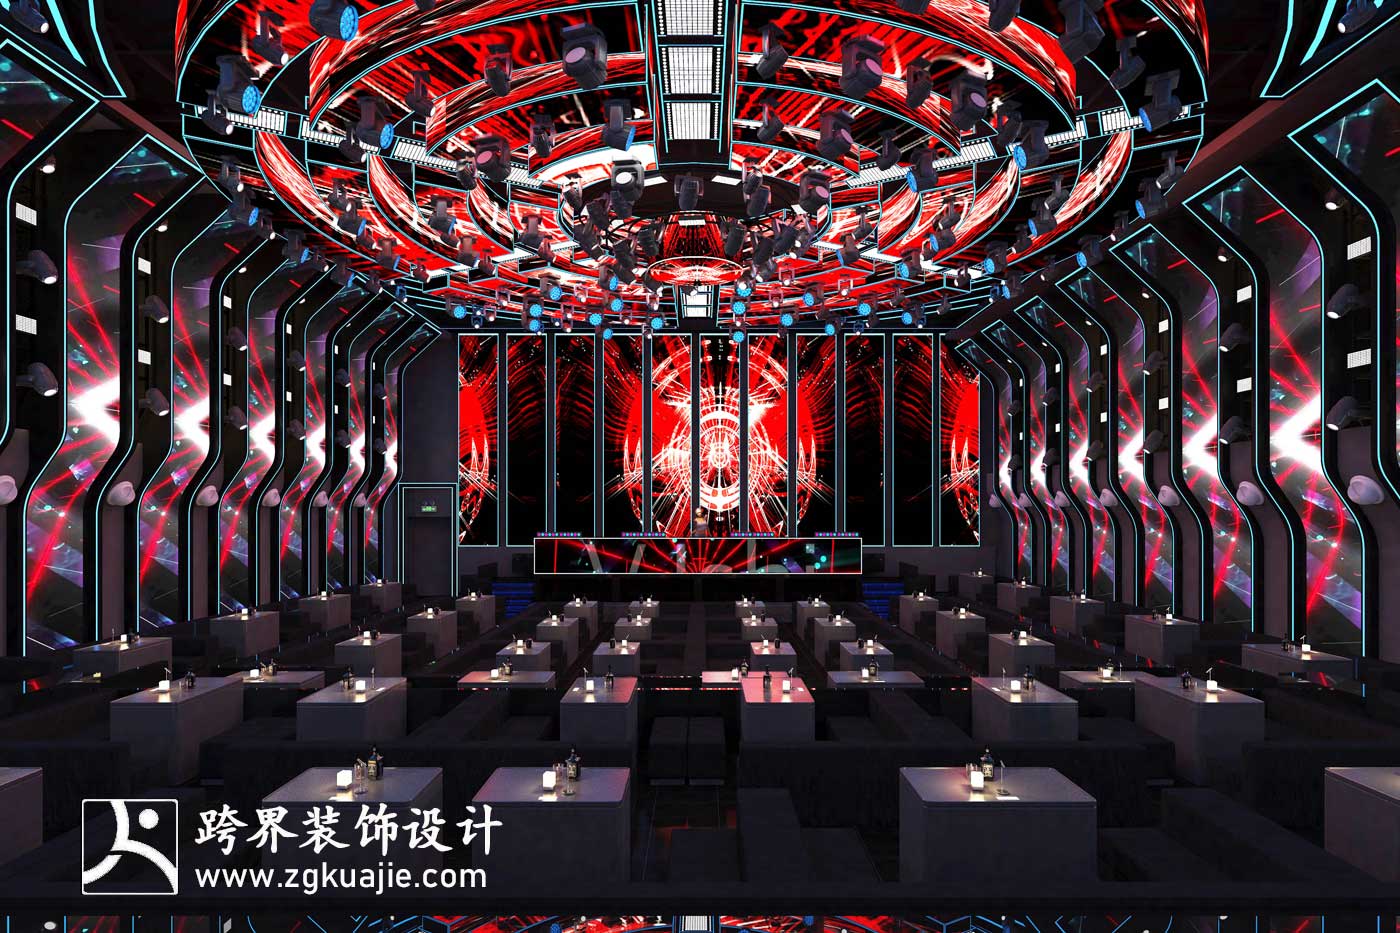 海南跨界装饰设计徐闻县天空酒吧